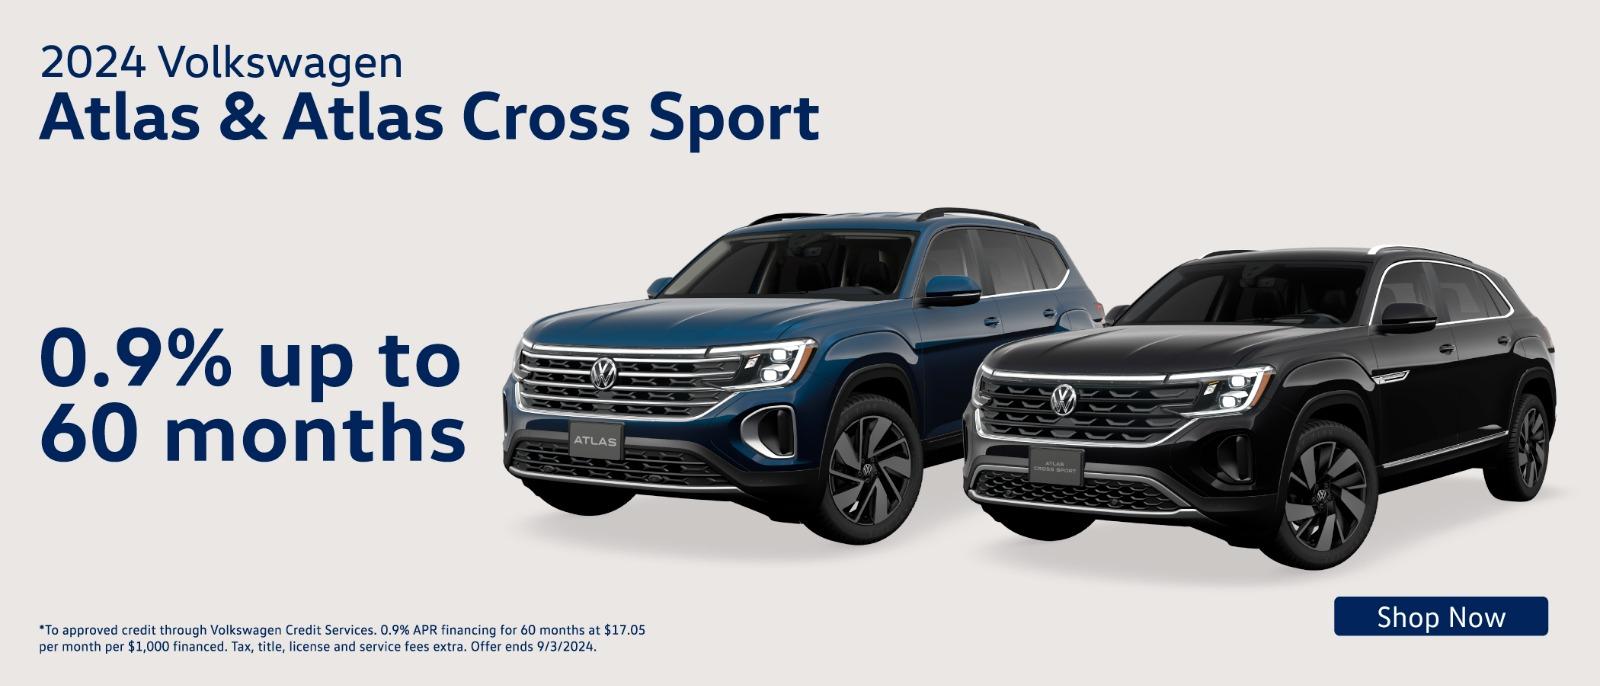 2024 Volkswagen Atlas & Atlas Cross Sport | 0.9% Up to 60Months